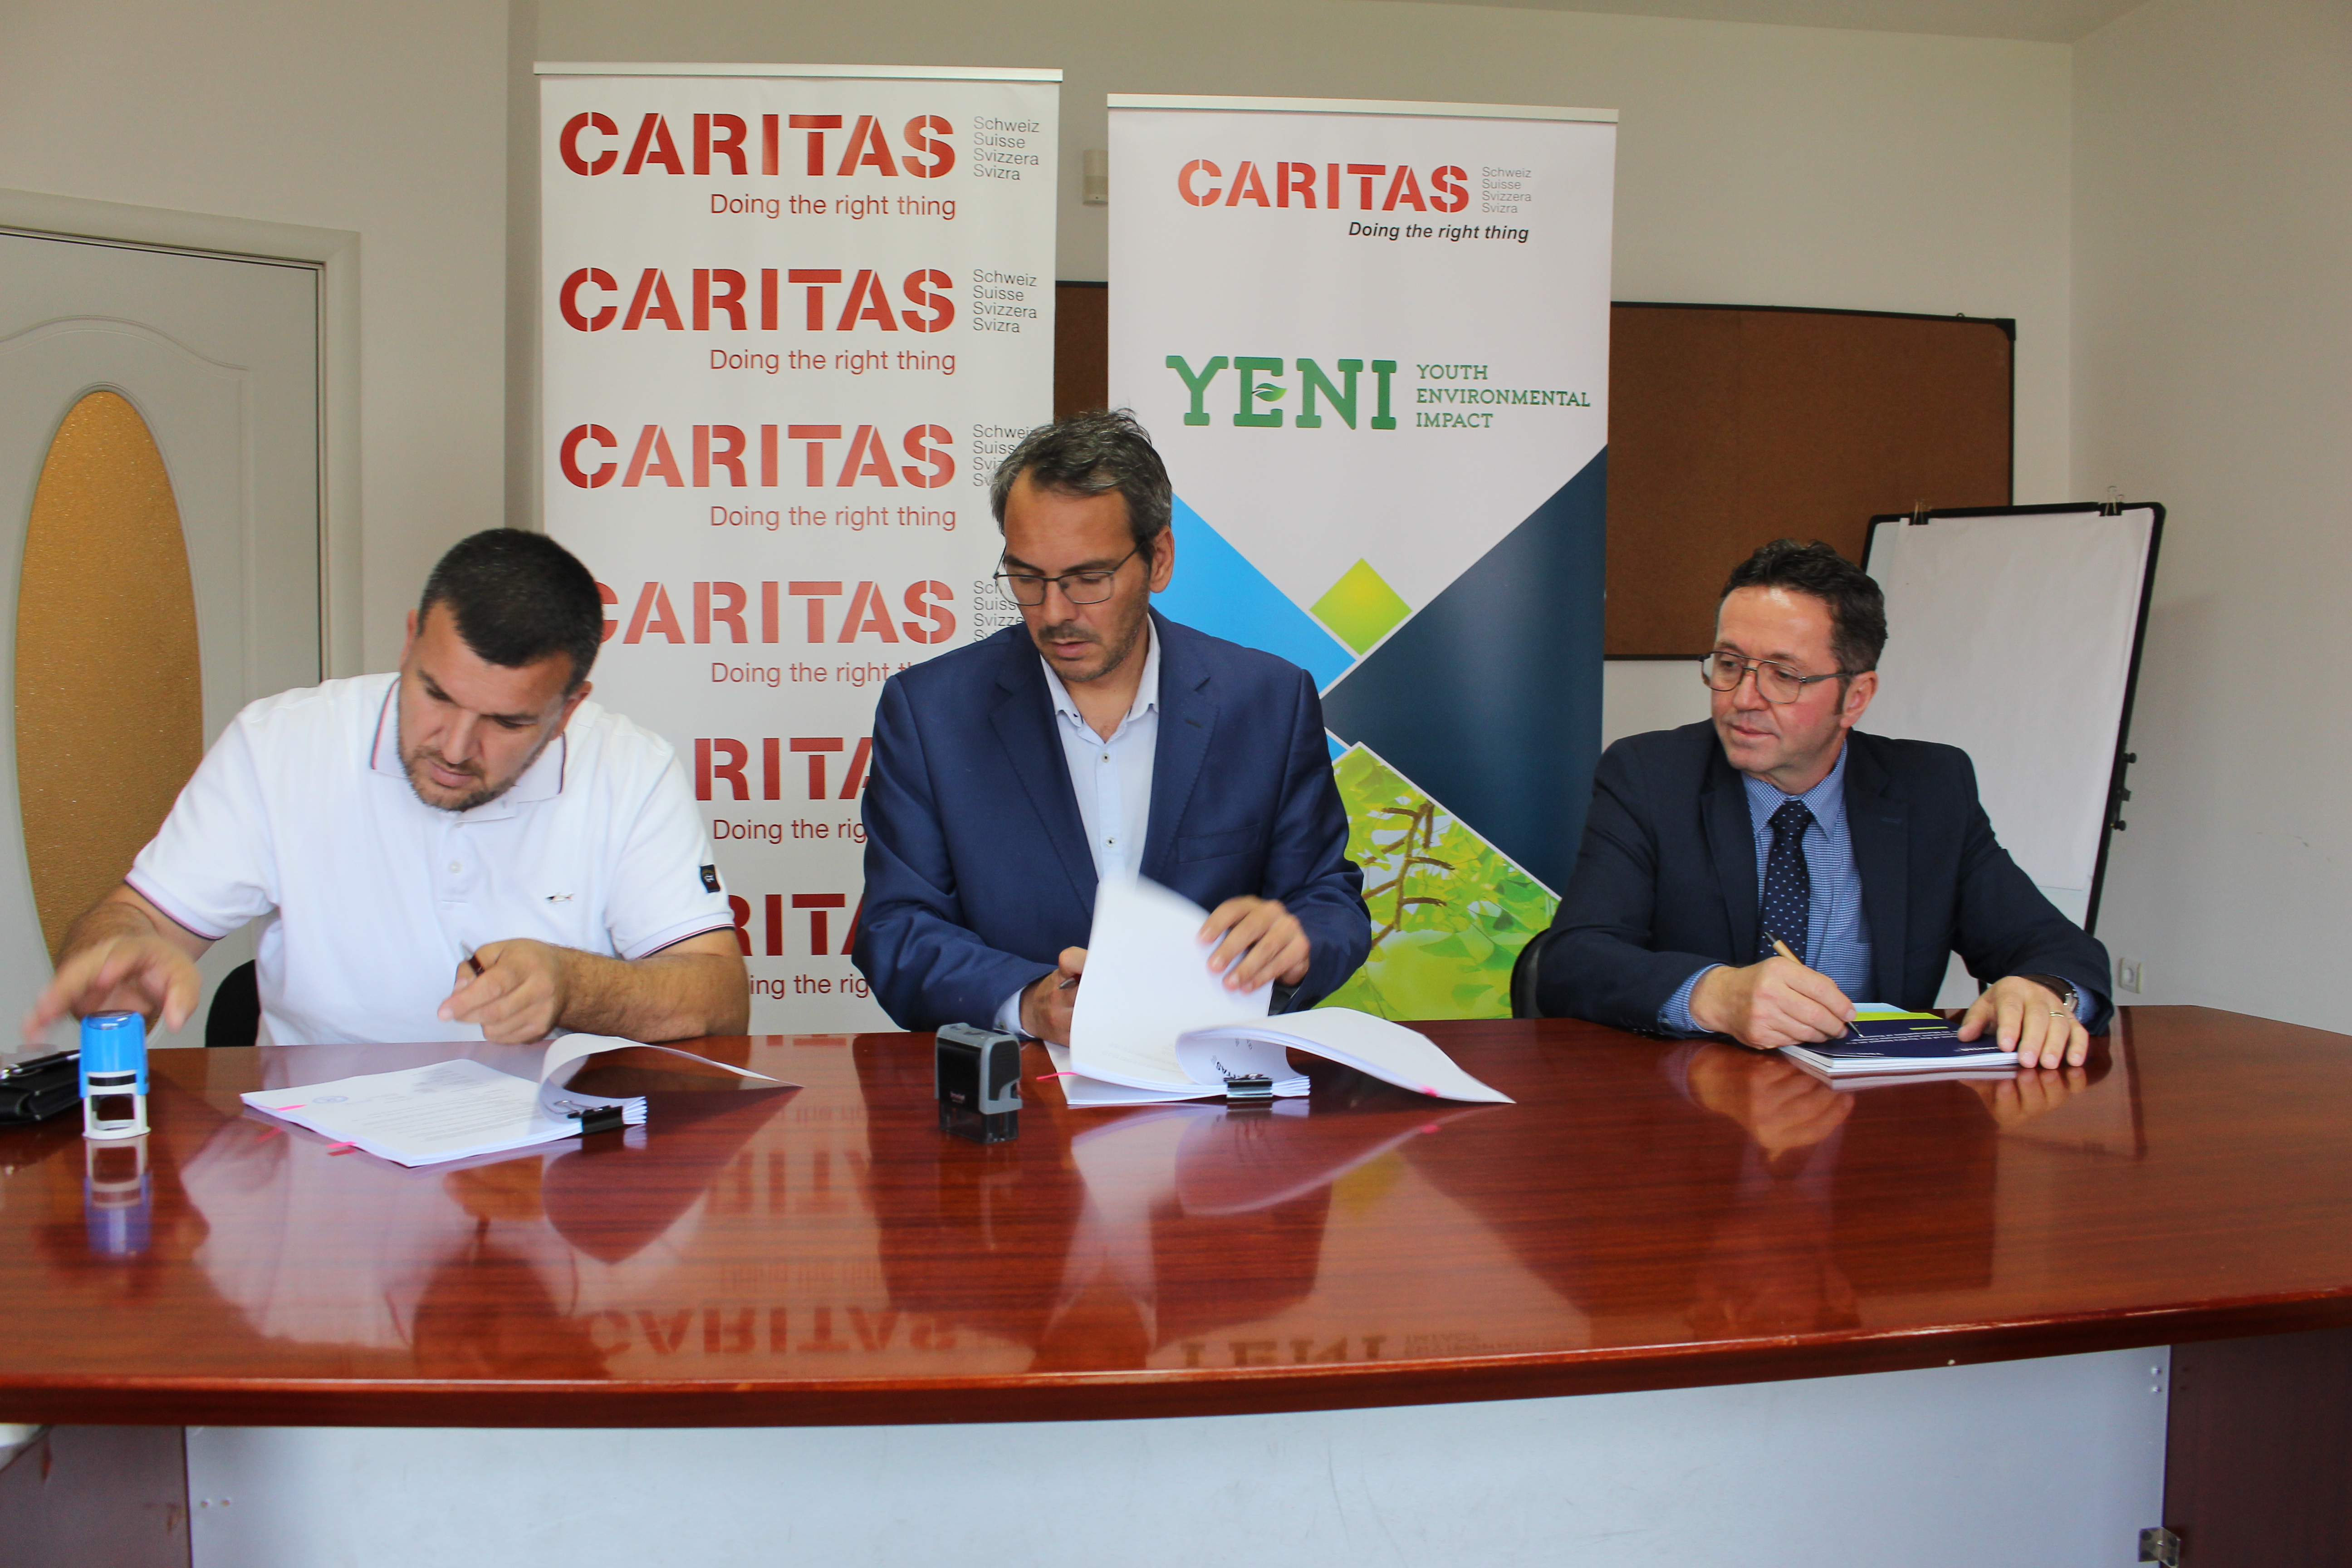 Mbahet ceremonia e nënshkrimit të kontratës në kuadër të projektit YENI bashkëfinancuar nga MZHR dhe Caritasi Zviceran